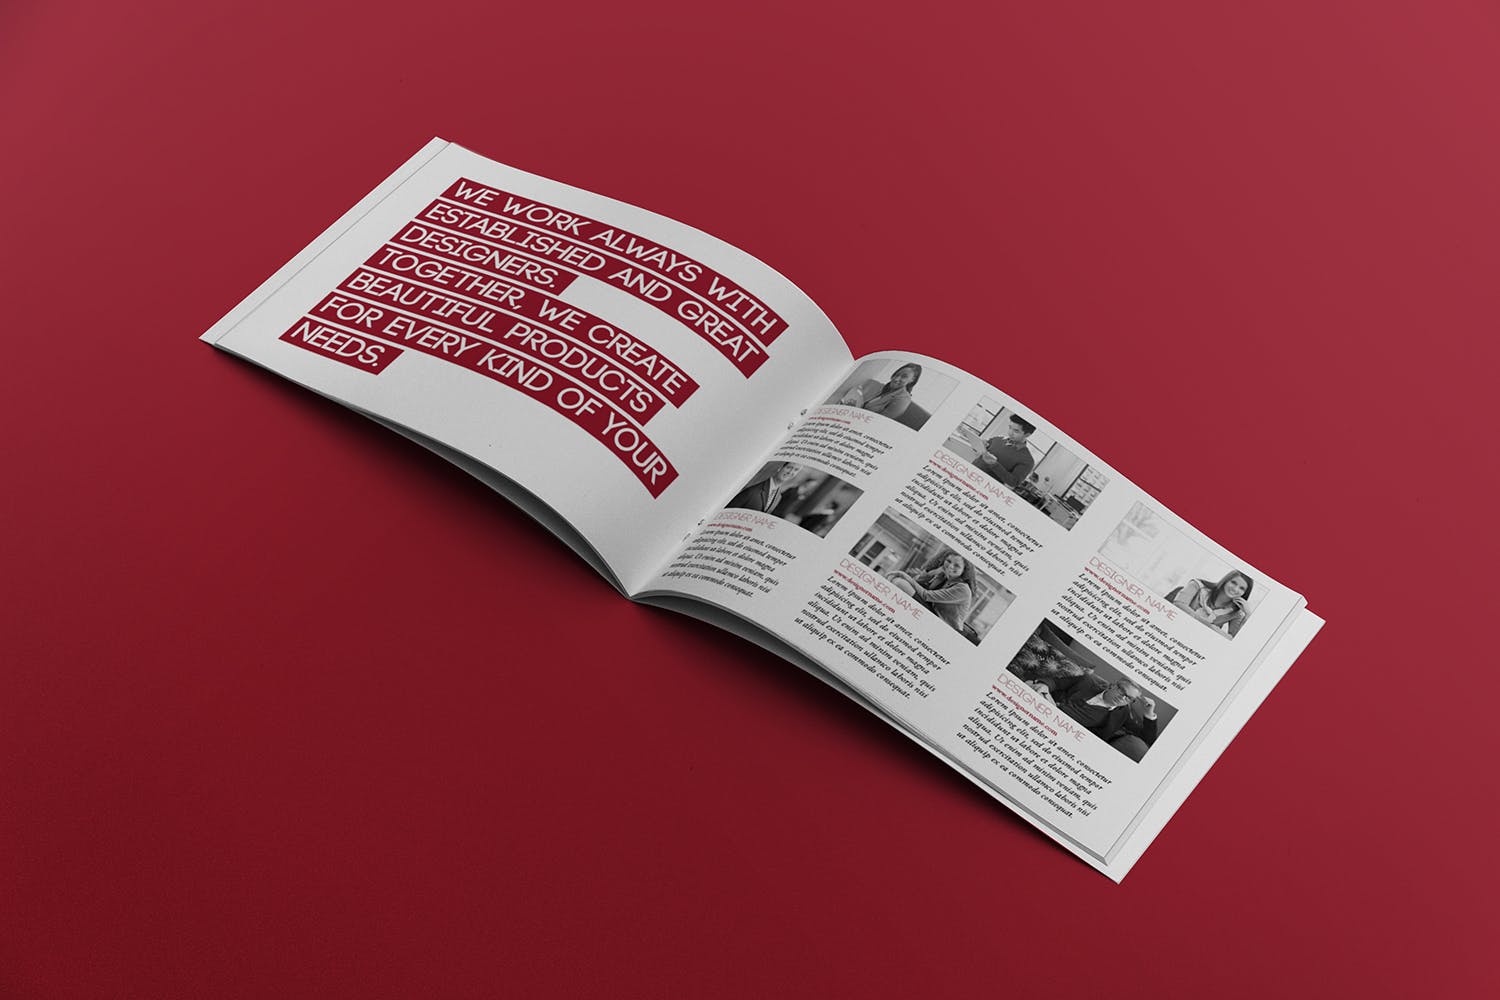 宣传画册/企业画册内页版式设计图样机大洋岛精选 Open Landscape Brochure Mockup插图2